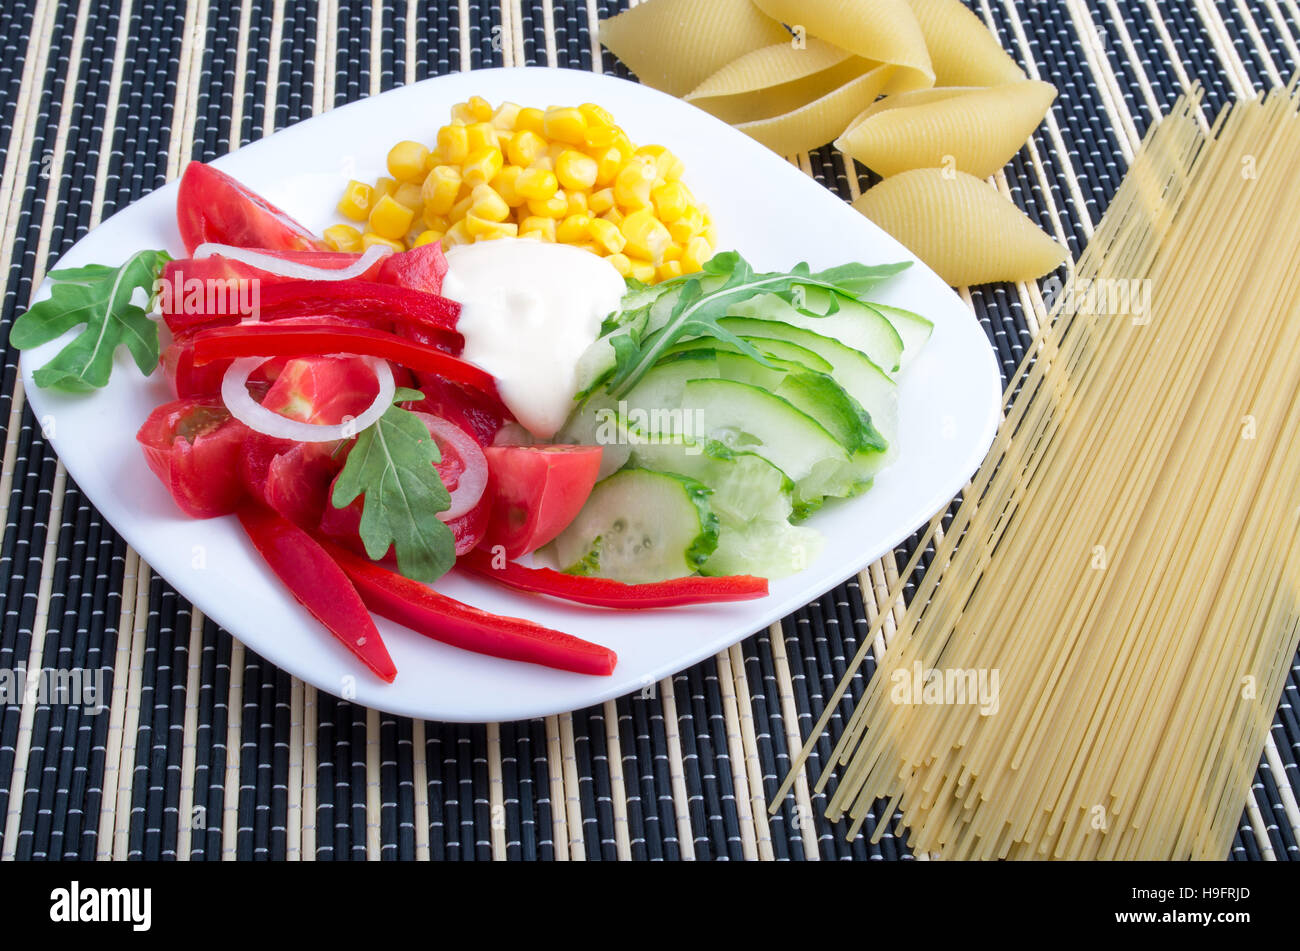 Scheiben von frischem rohem Gemüse auf einem weißen Teller - Pfeffer, Tomaten, Mais, Rucola, Gurken, Mozzarella-Käse auf einem gestreiften Hintergrund mit Pasta und sp Stockfoto